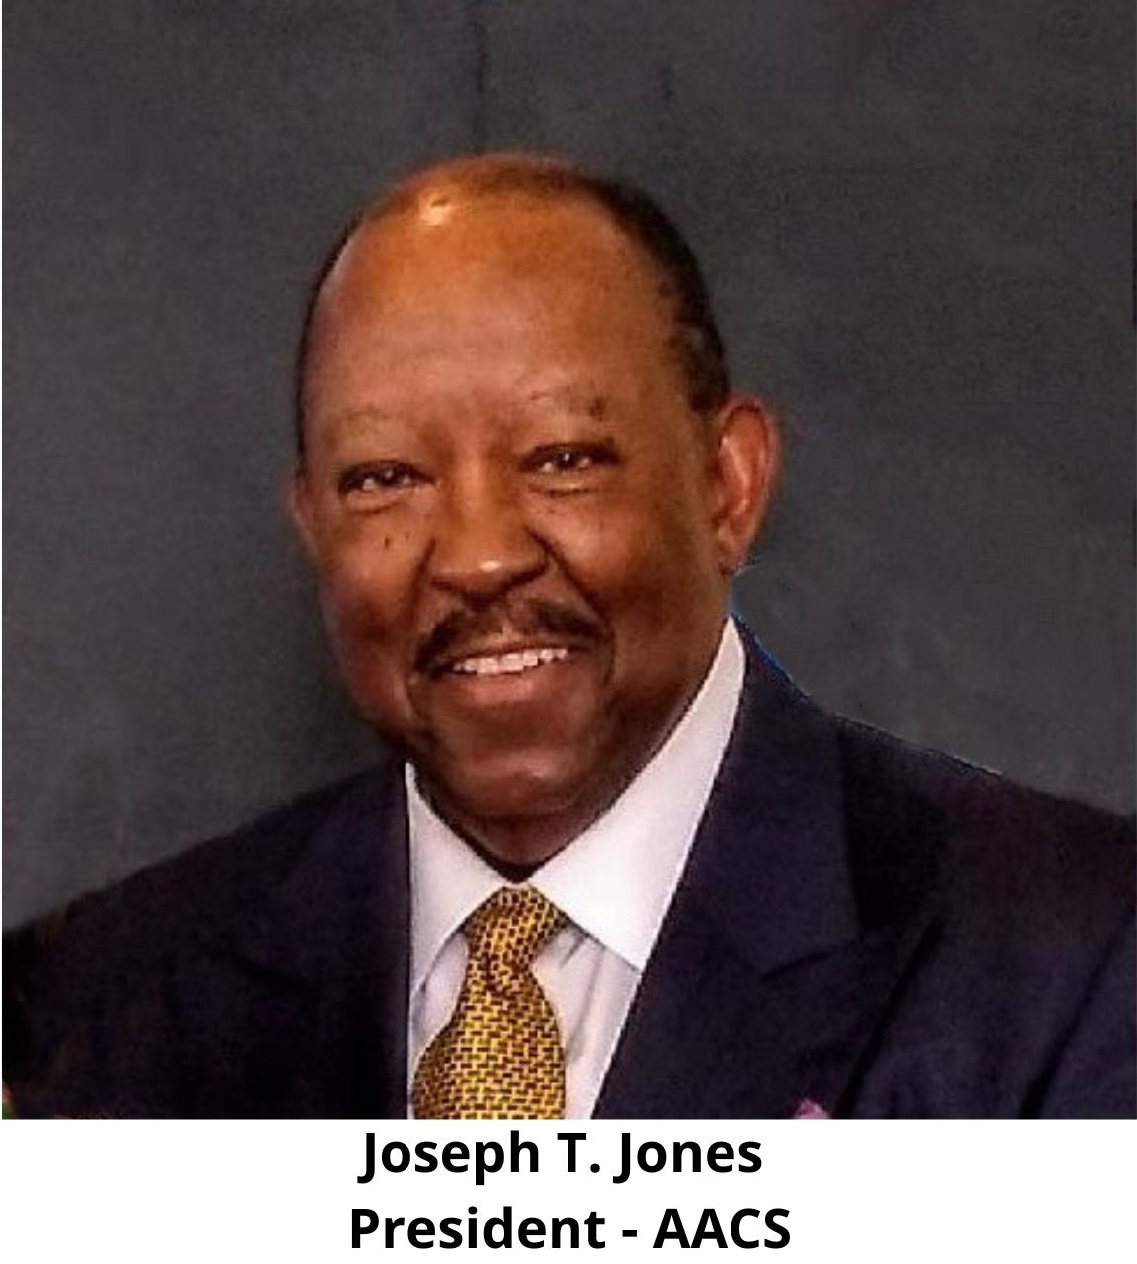 Joseph T. Jones